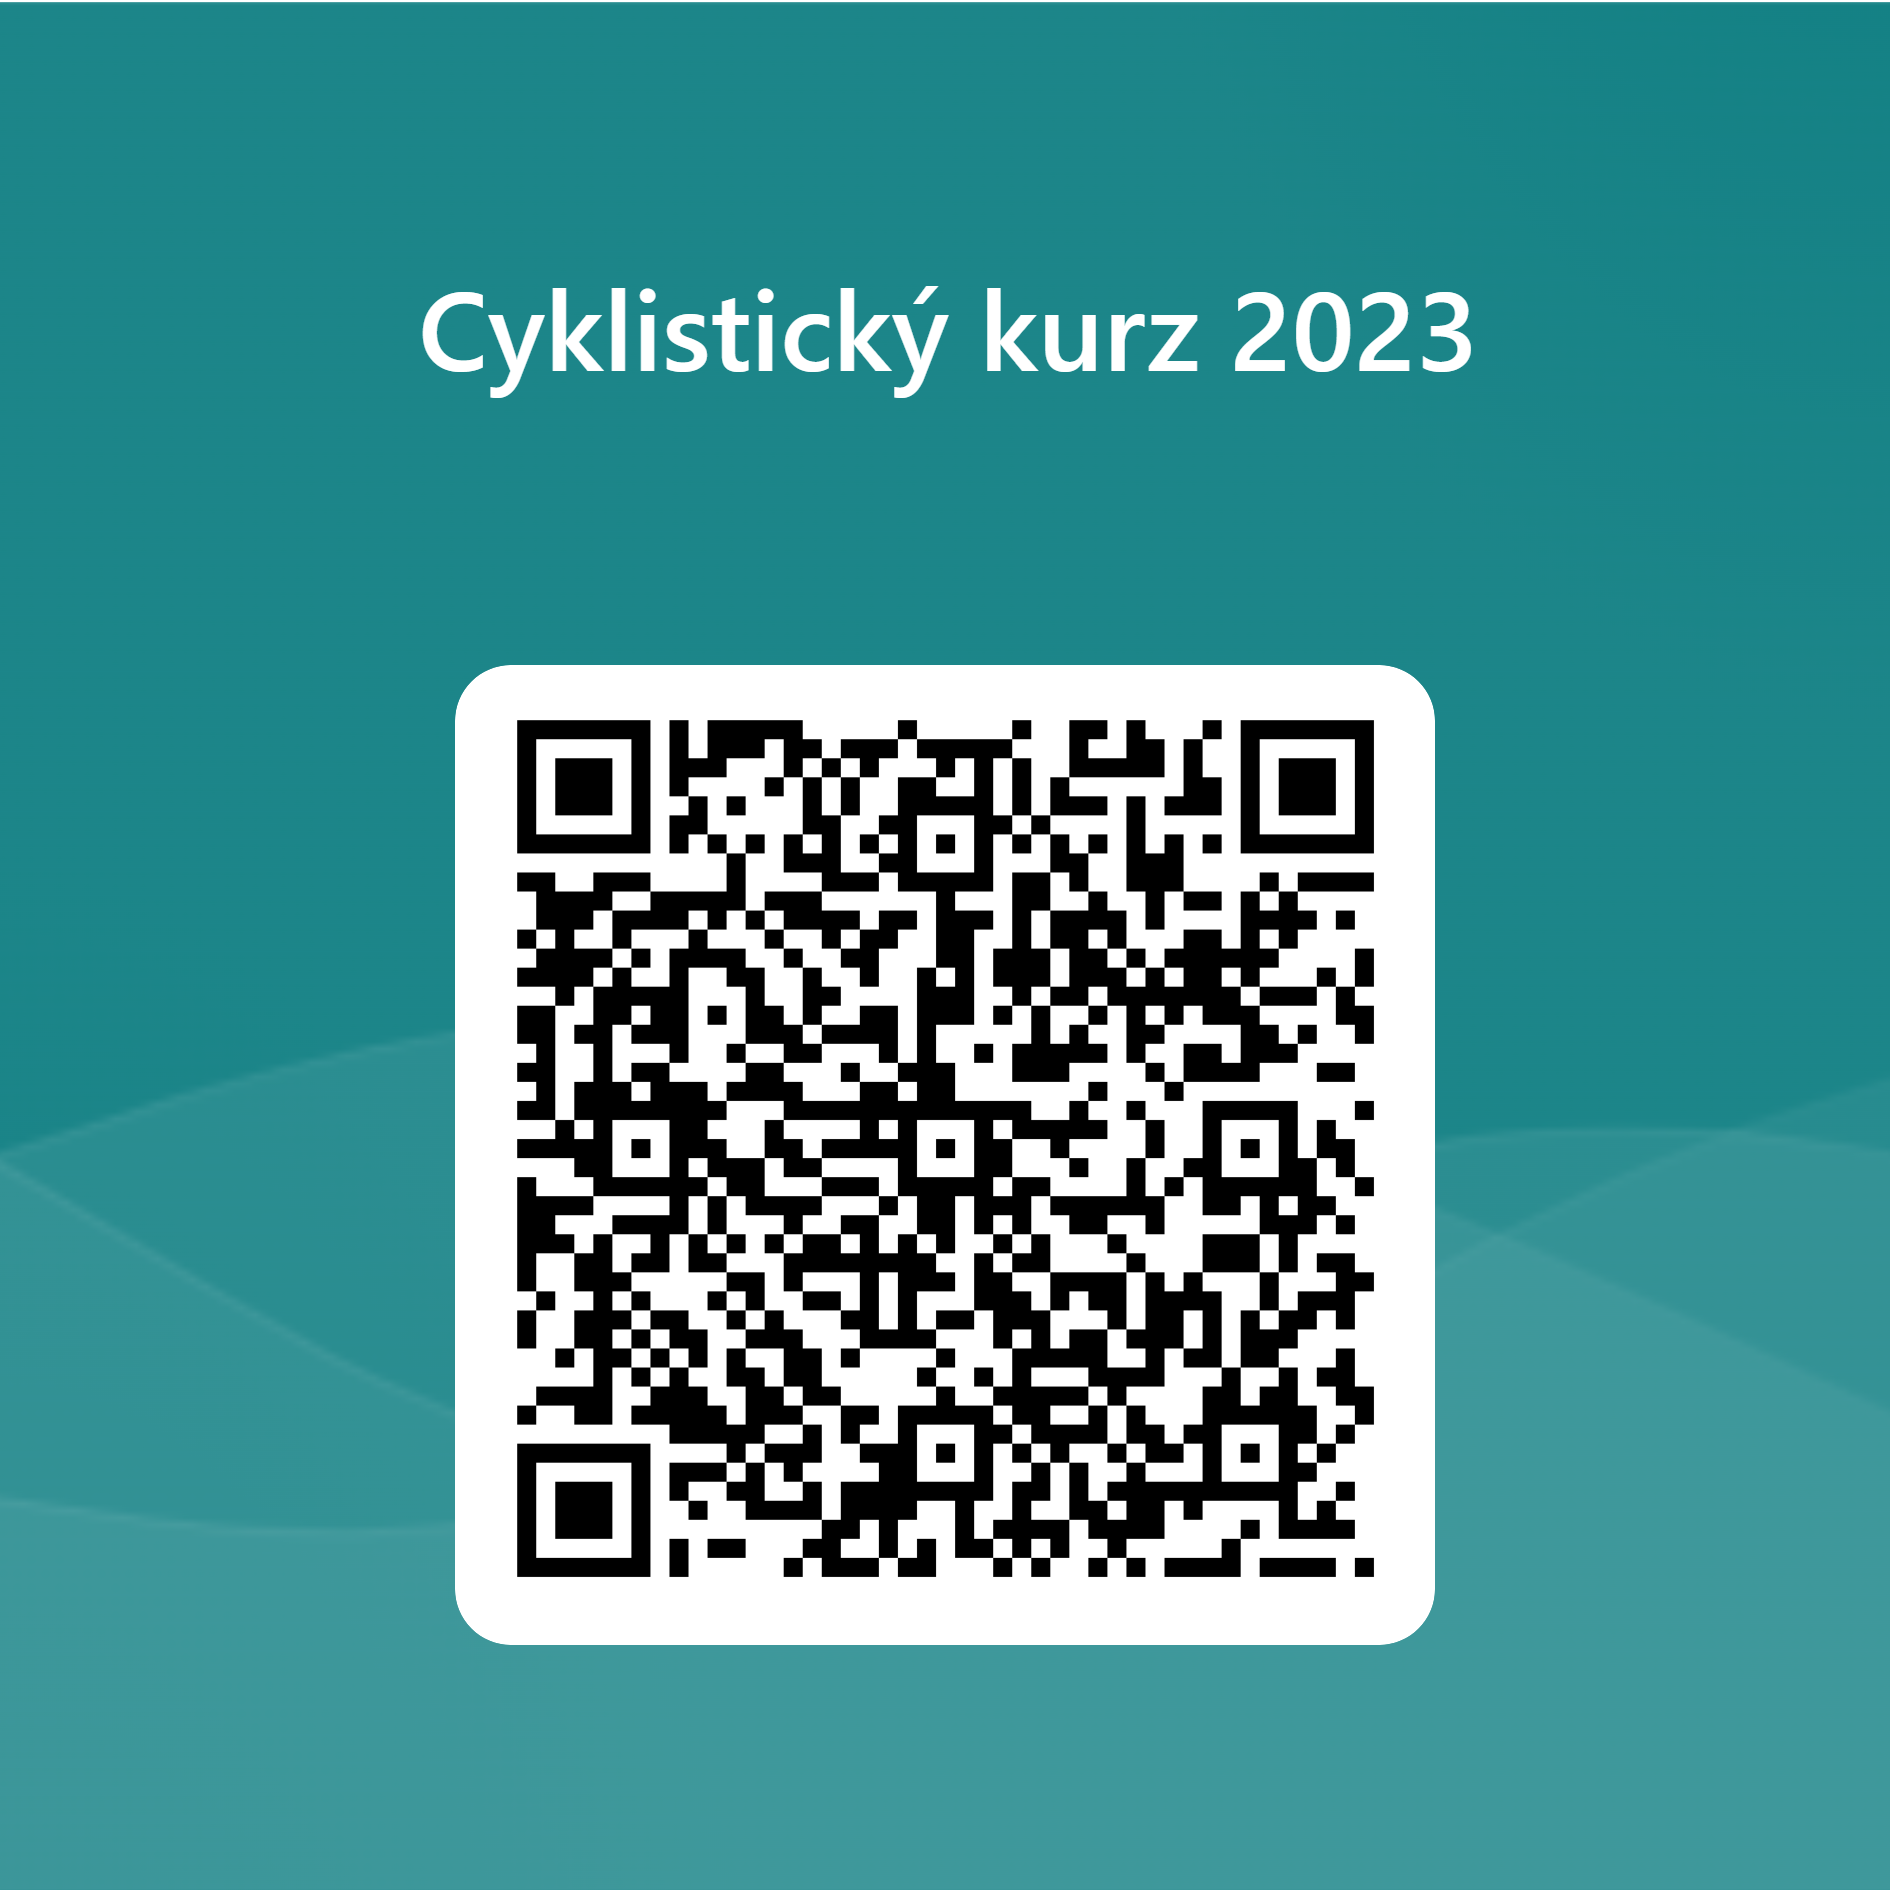 QRCode_pro_Cyklistický_kurz_2023.png